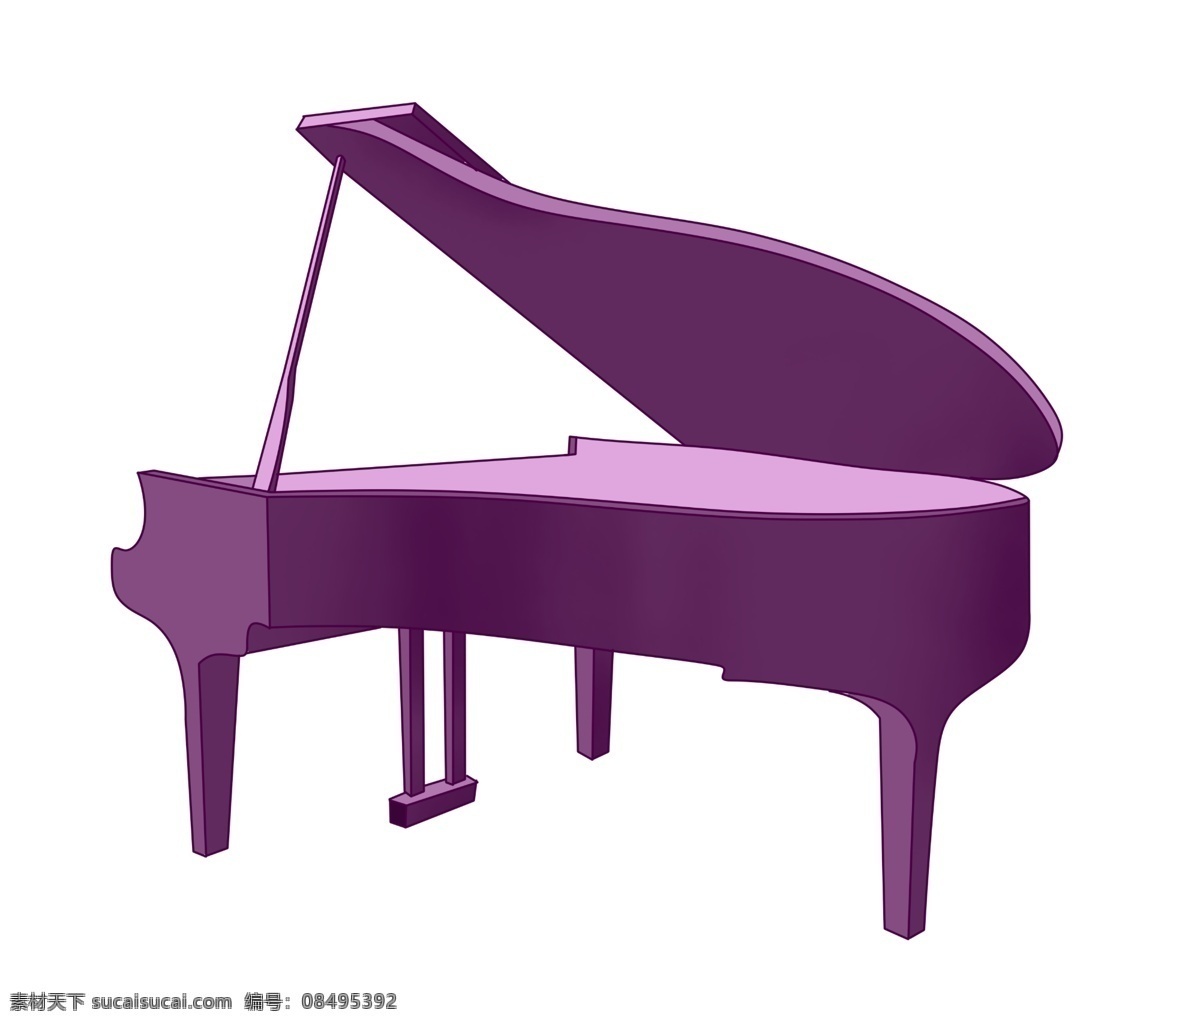 紫色 钢琴 装饰 插画 紫色的钢琴 乐器钢琴 漂亮的钢琴 创意钢琴 立体钢琴 钢琴装饰 精美钢琴